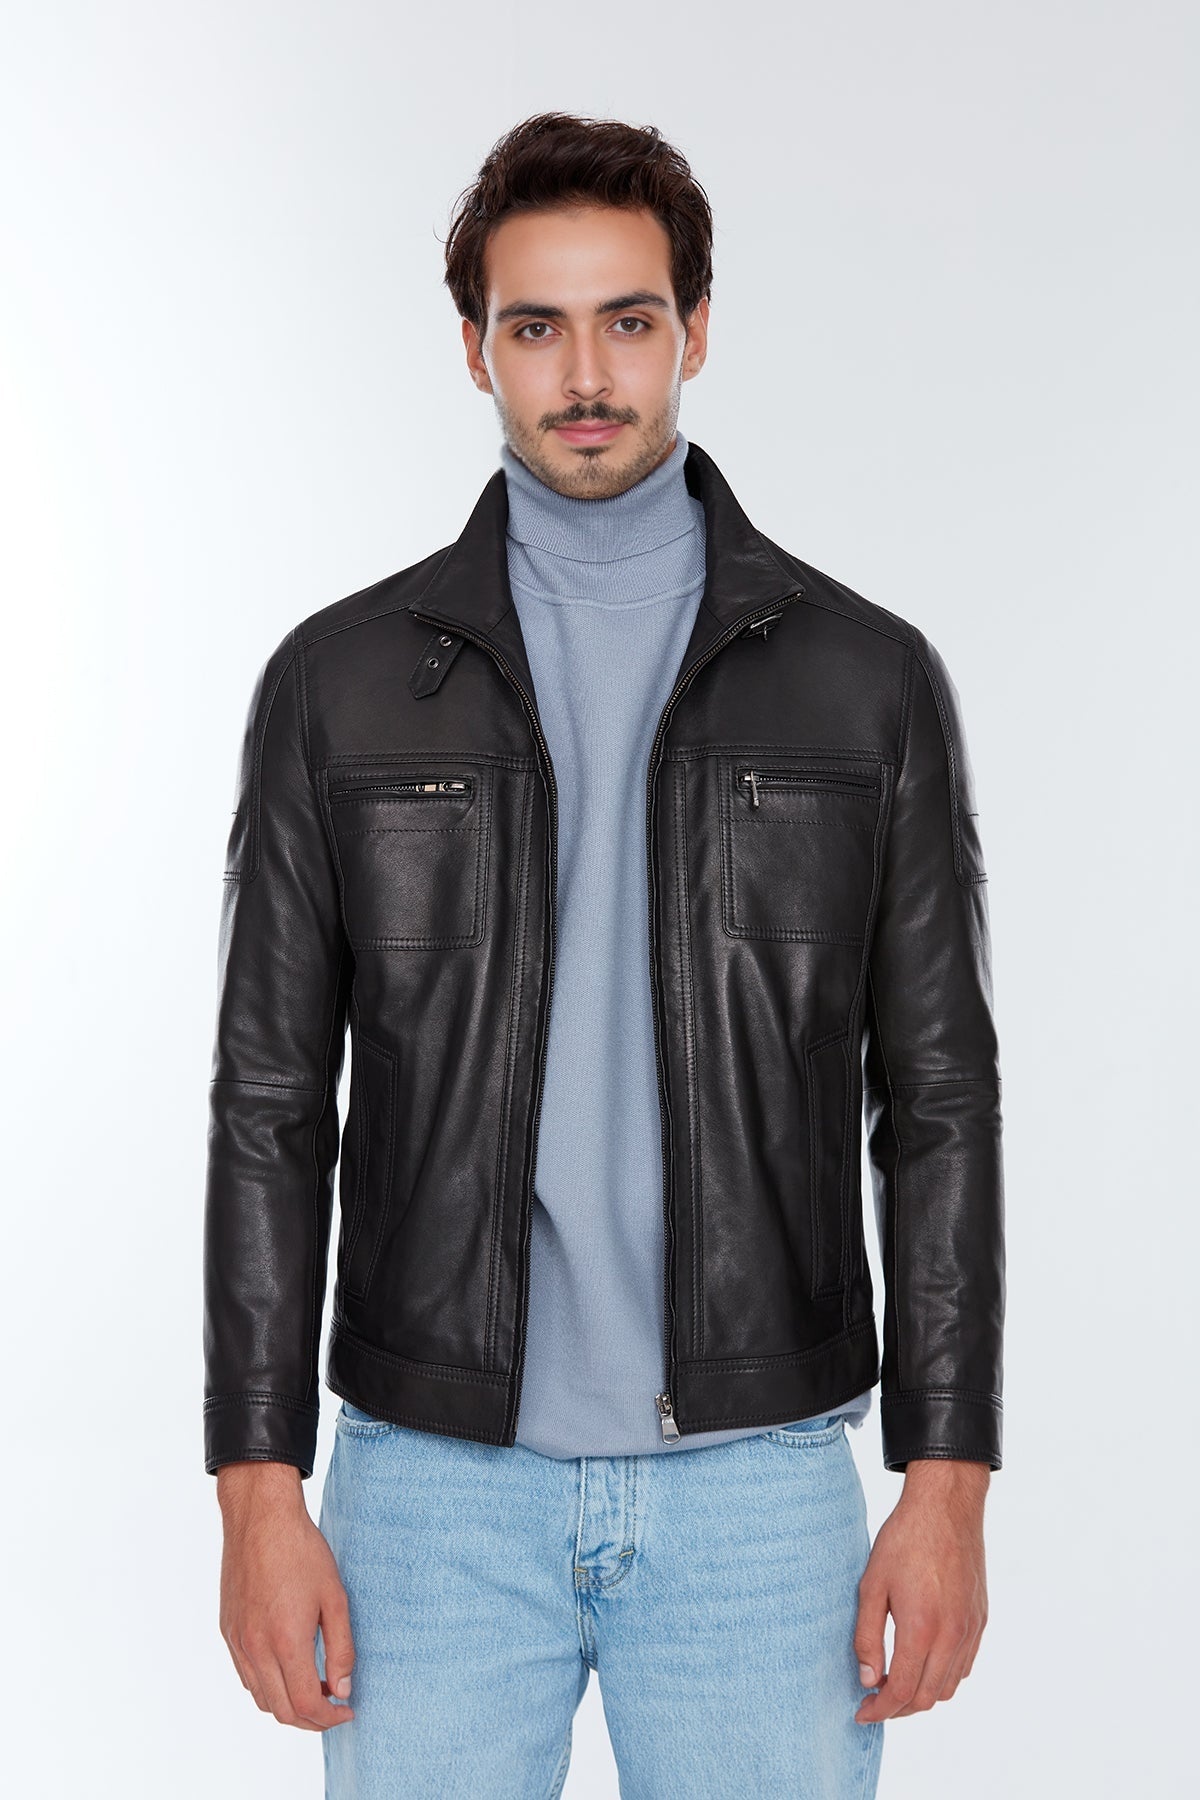 Wade Men's Black Leather Slim-Fit Jacket